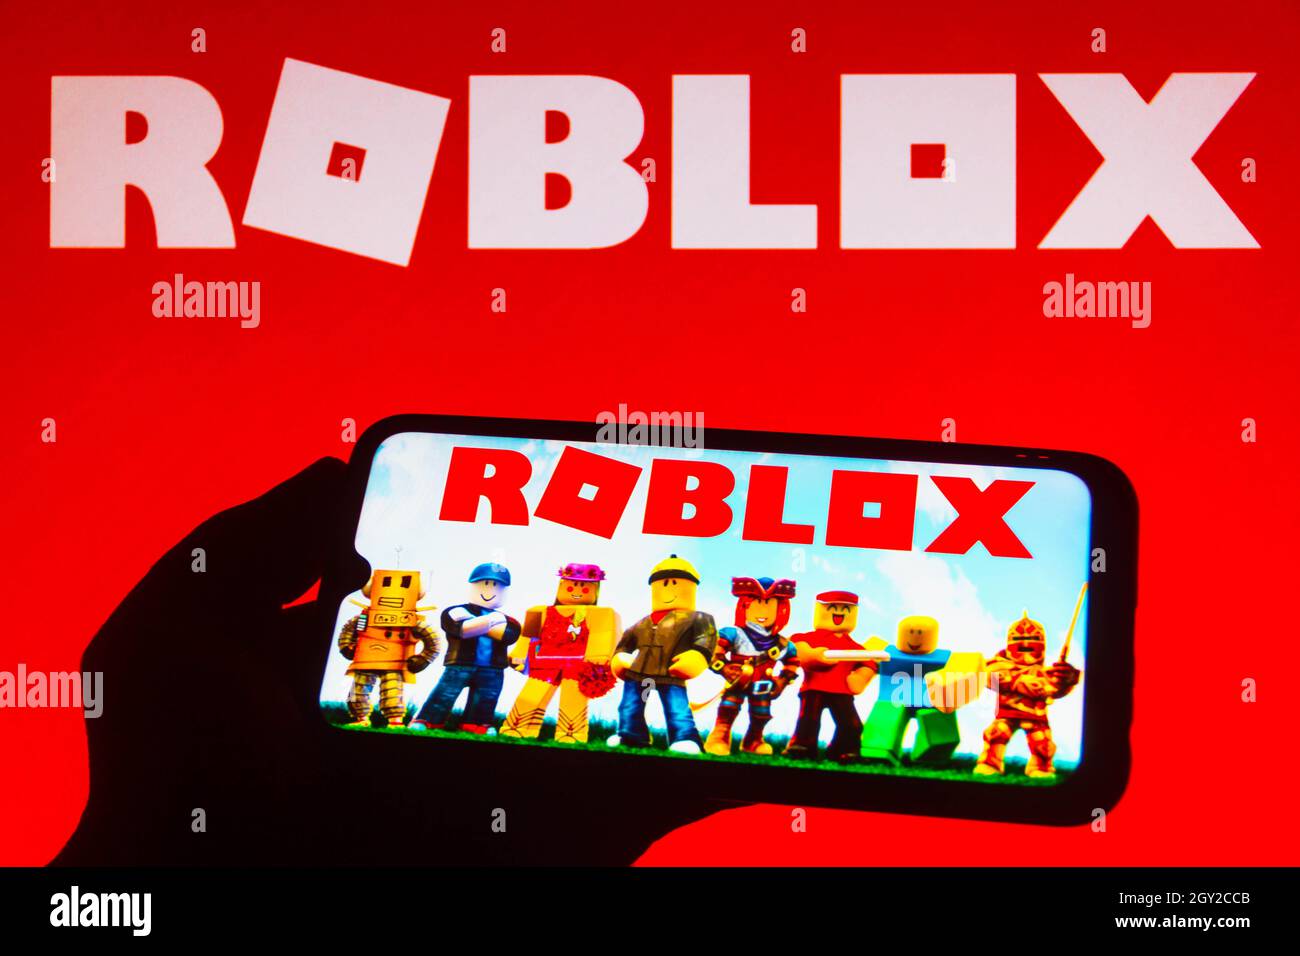 Logotipo Roblox E Aplicativo Em Uma Tela Móvel Em Uma Mão Foto de